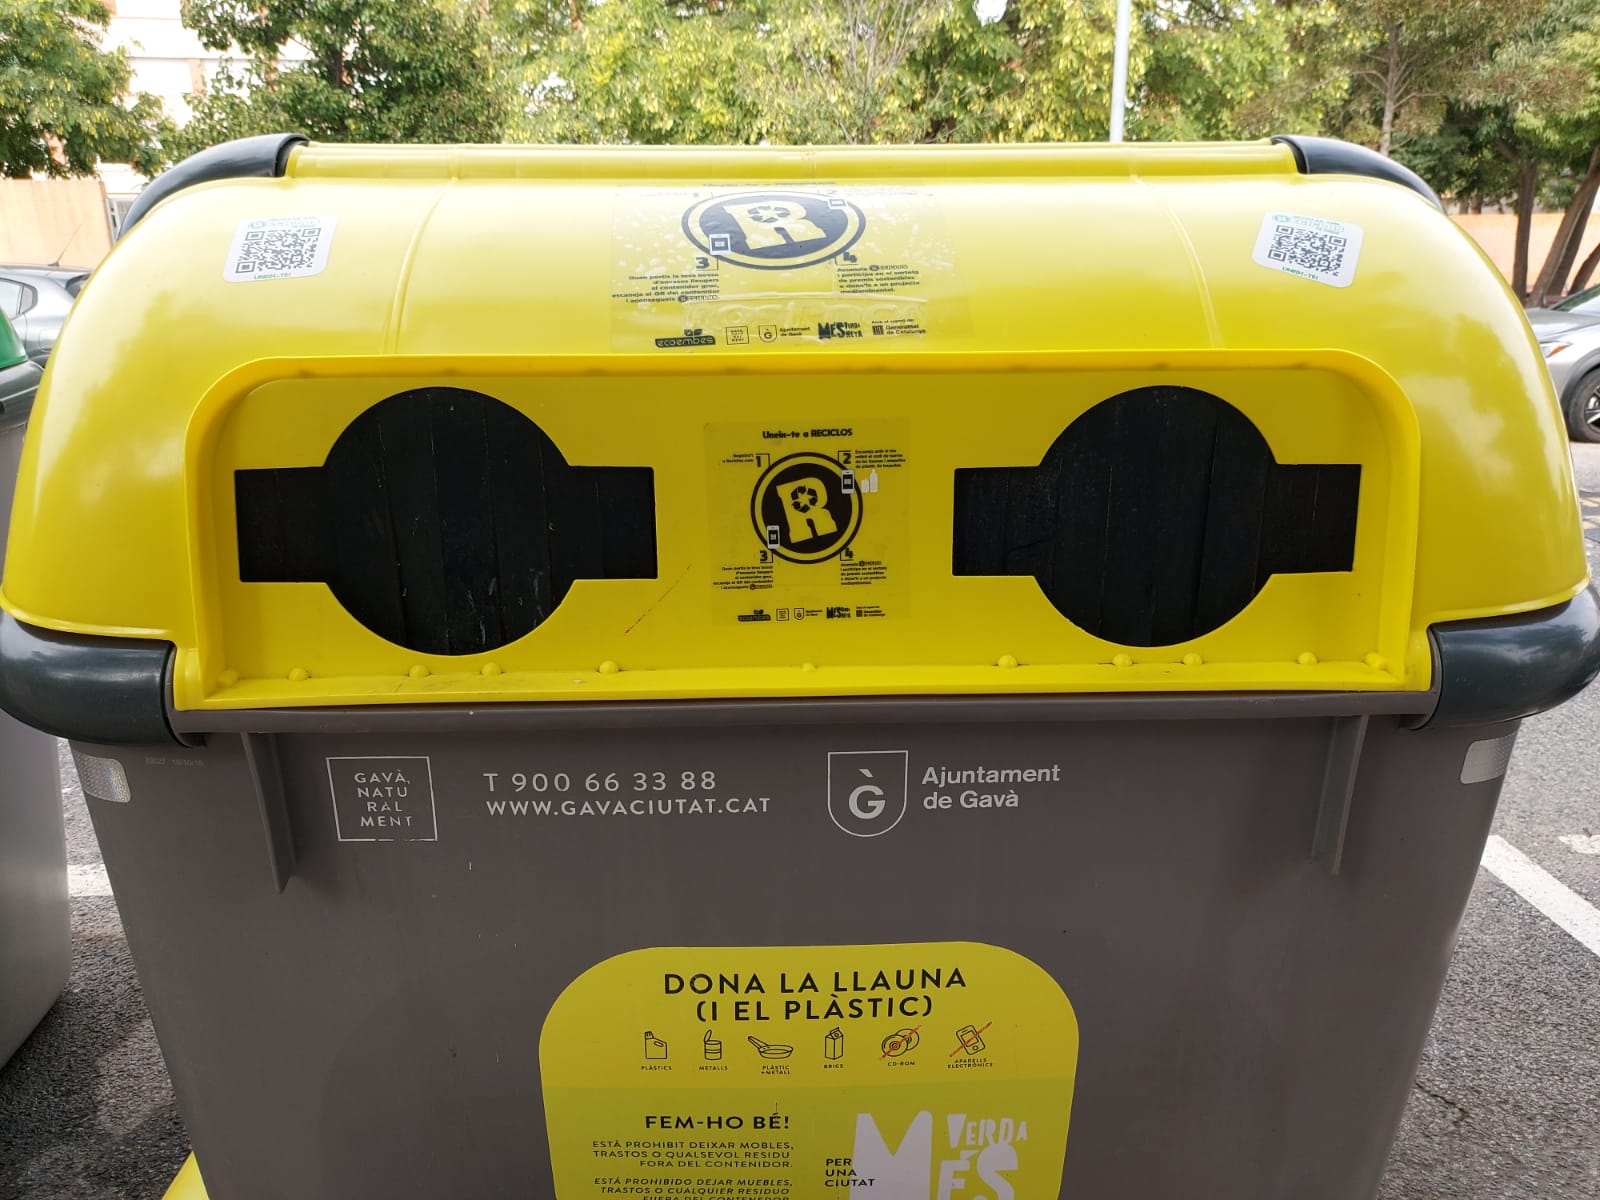 Los ciudadanos de Gavà obtendrán premios para reciclar